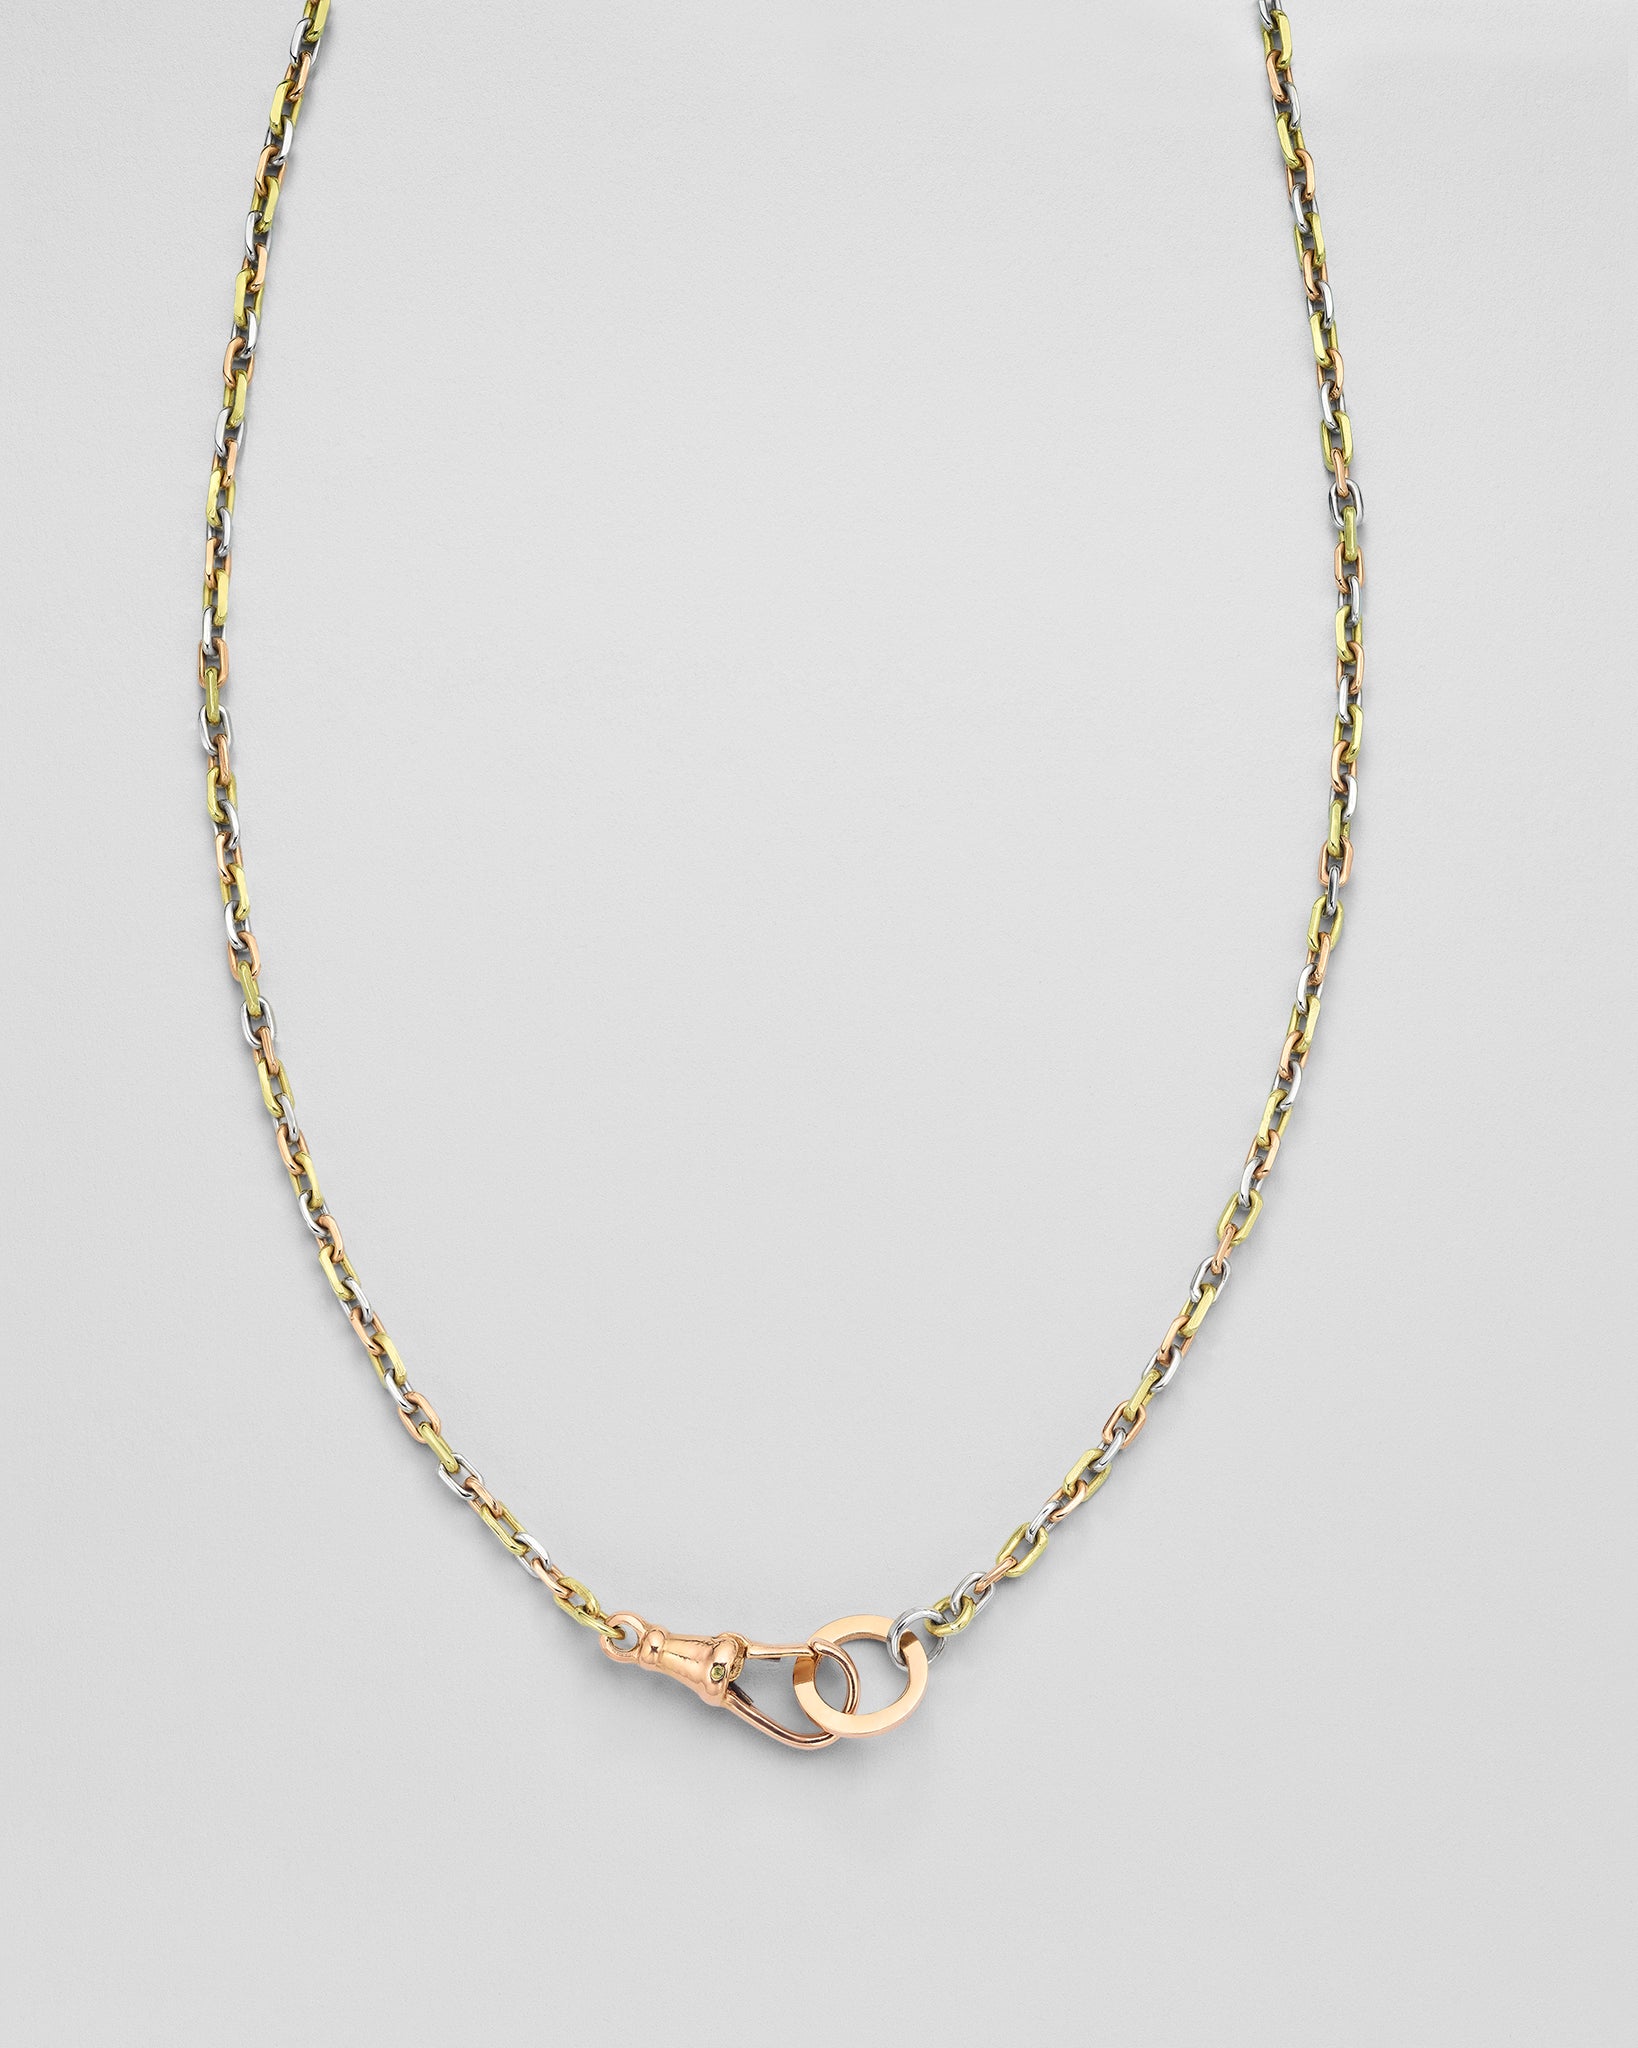 Tri-Color Petite Cable Chain Necklace